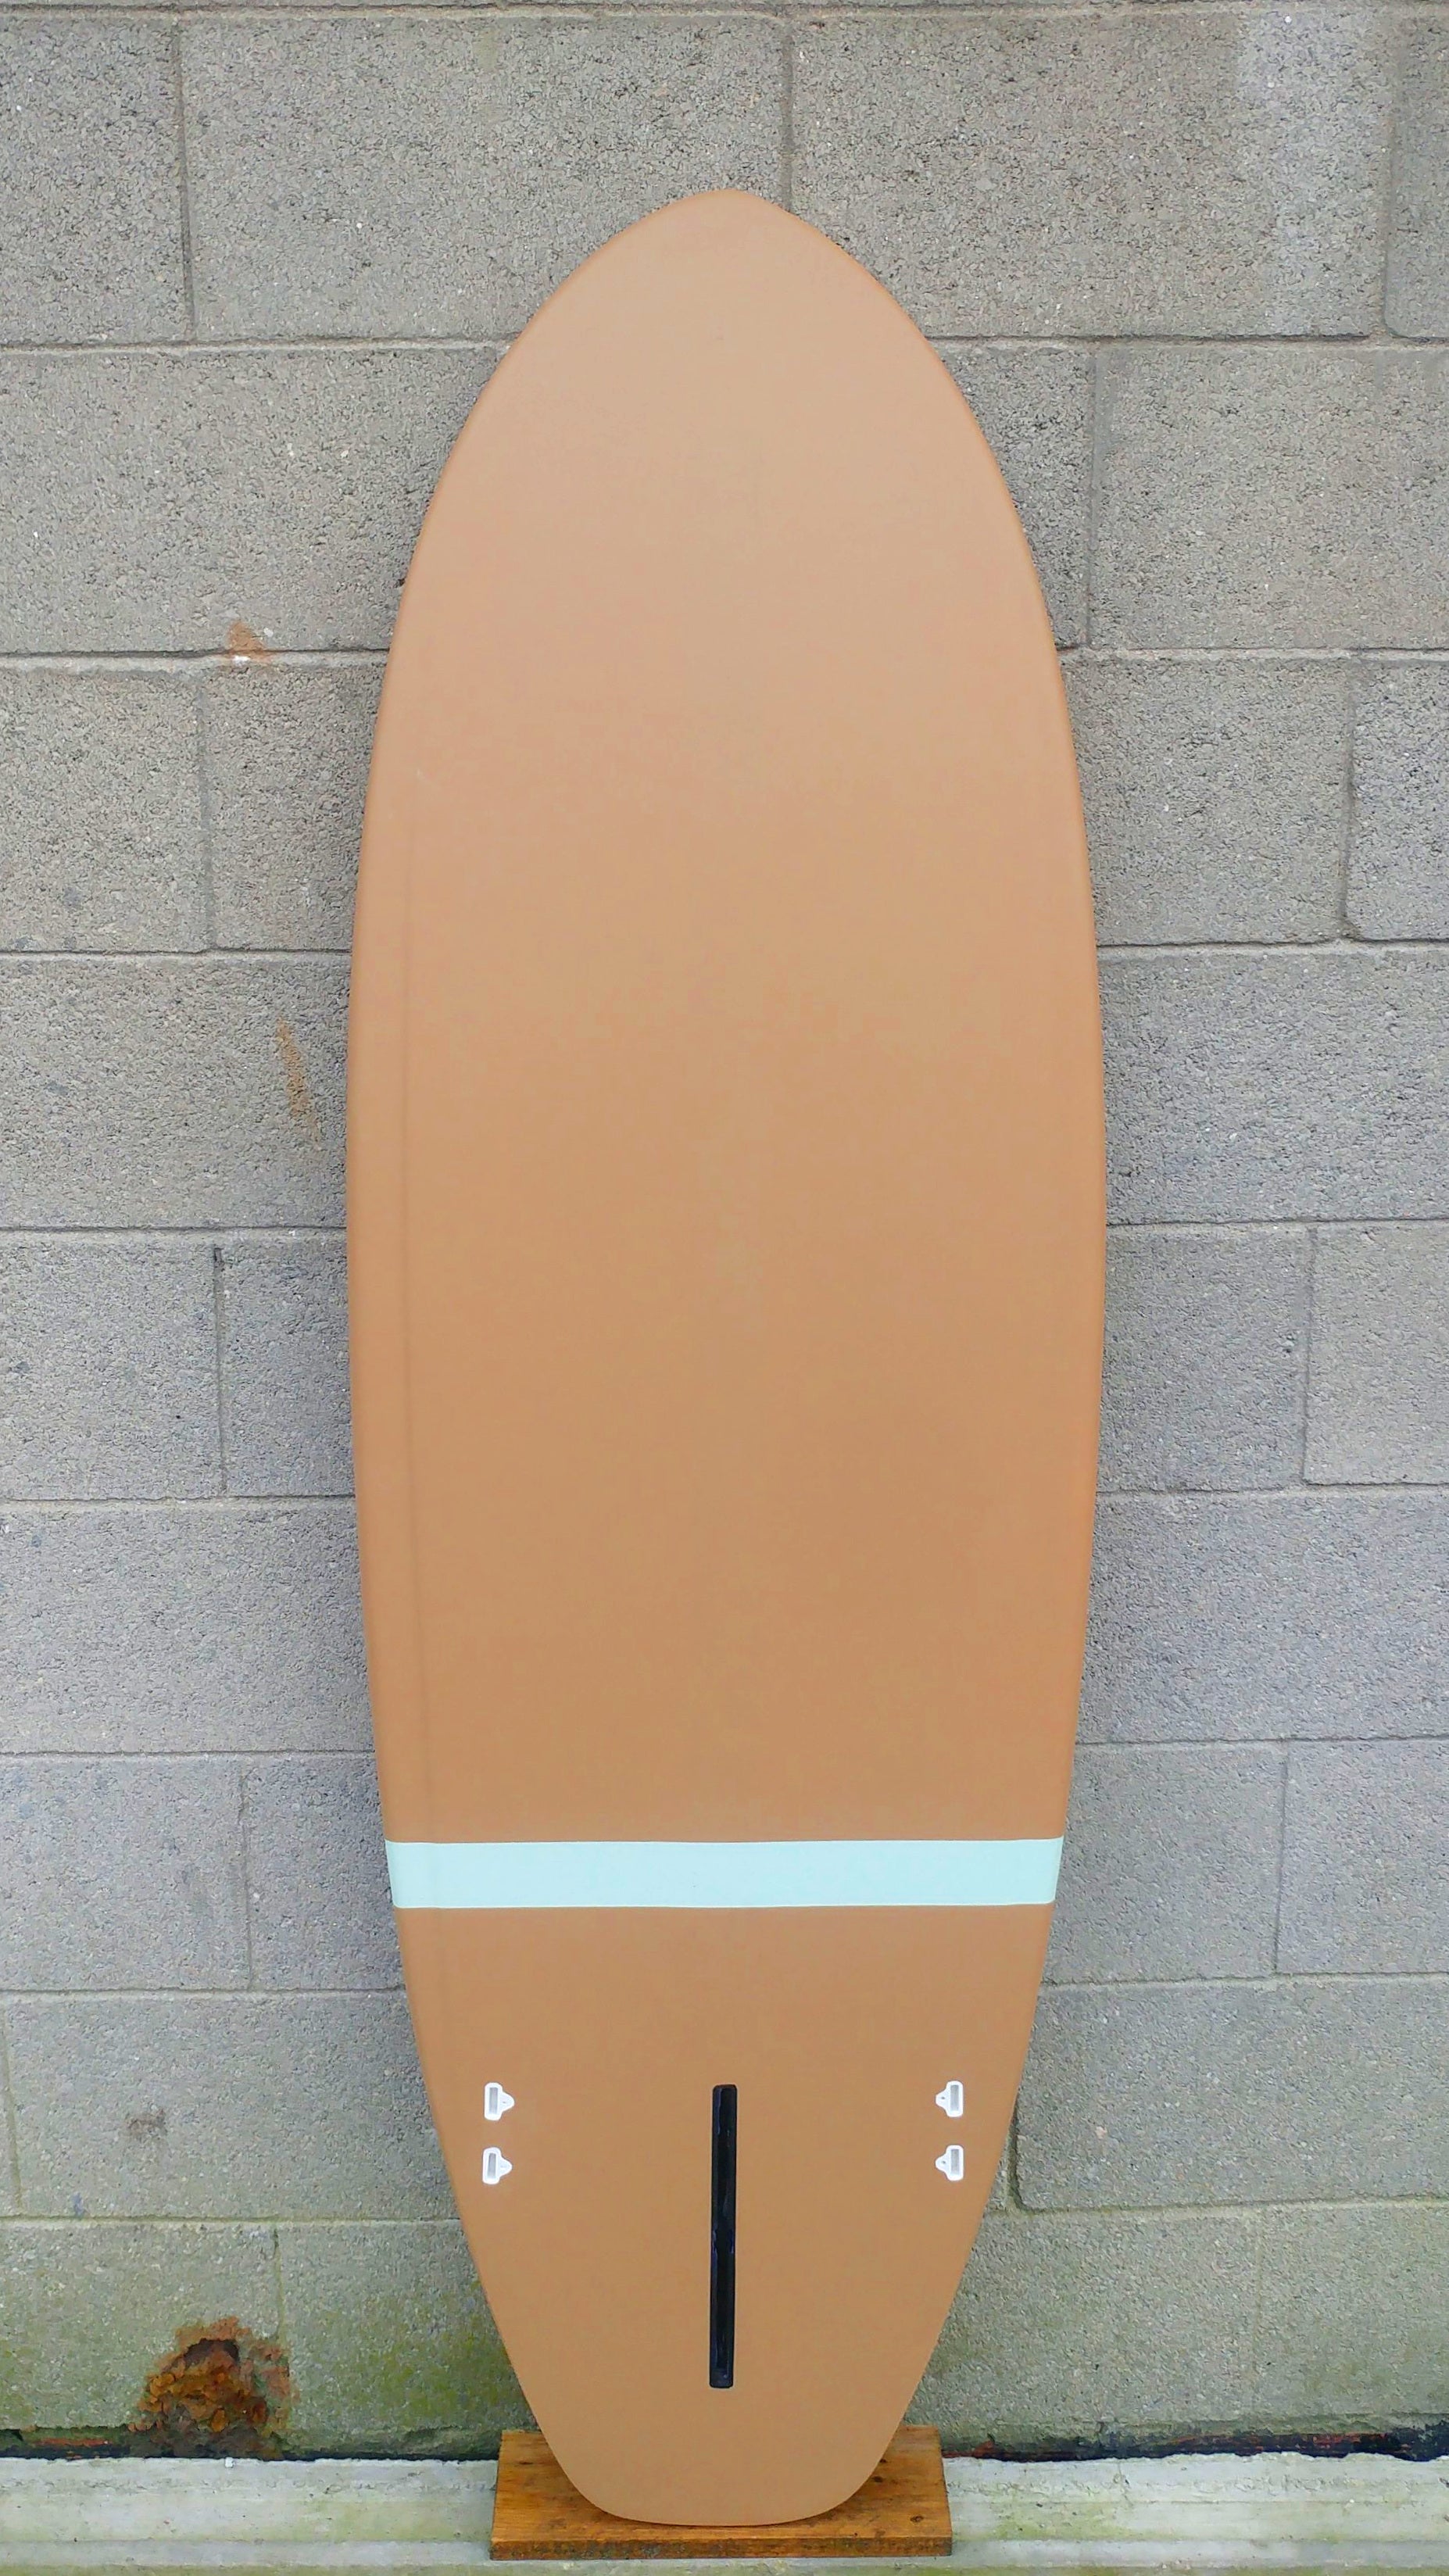 Stubbie — STINKY TOFU SURFBOARDS